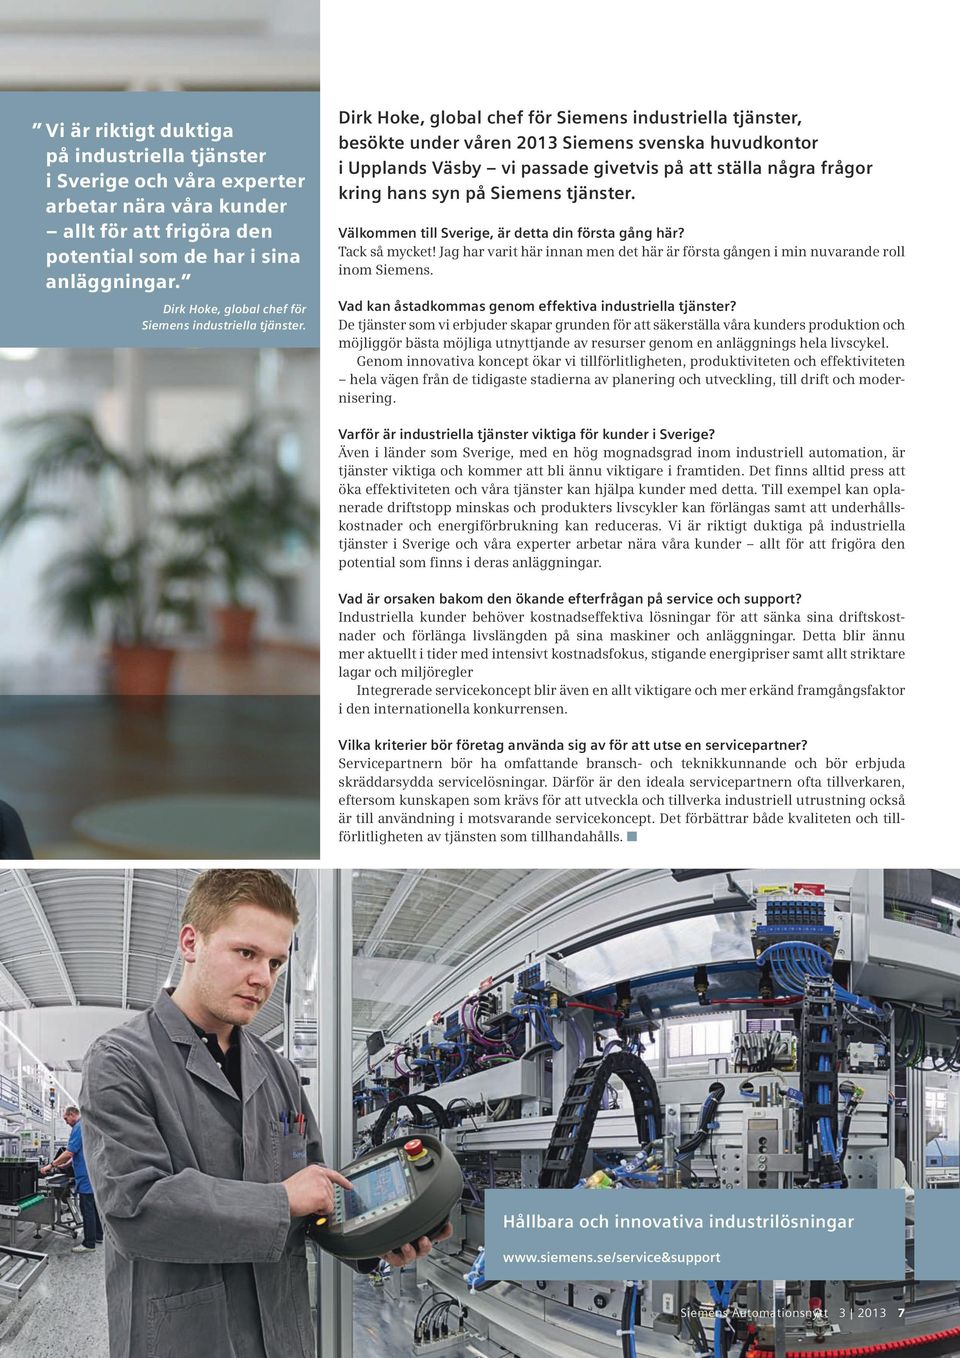 Dirk Hoke, global chef för Siemens industriella tjänster, besökte under våren 2013 Siemens svenska huvudkontor i Upplands Väsby vi passade givetvis på att ställa några frågor kring hans syn på